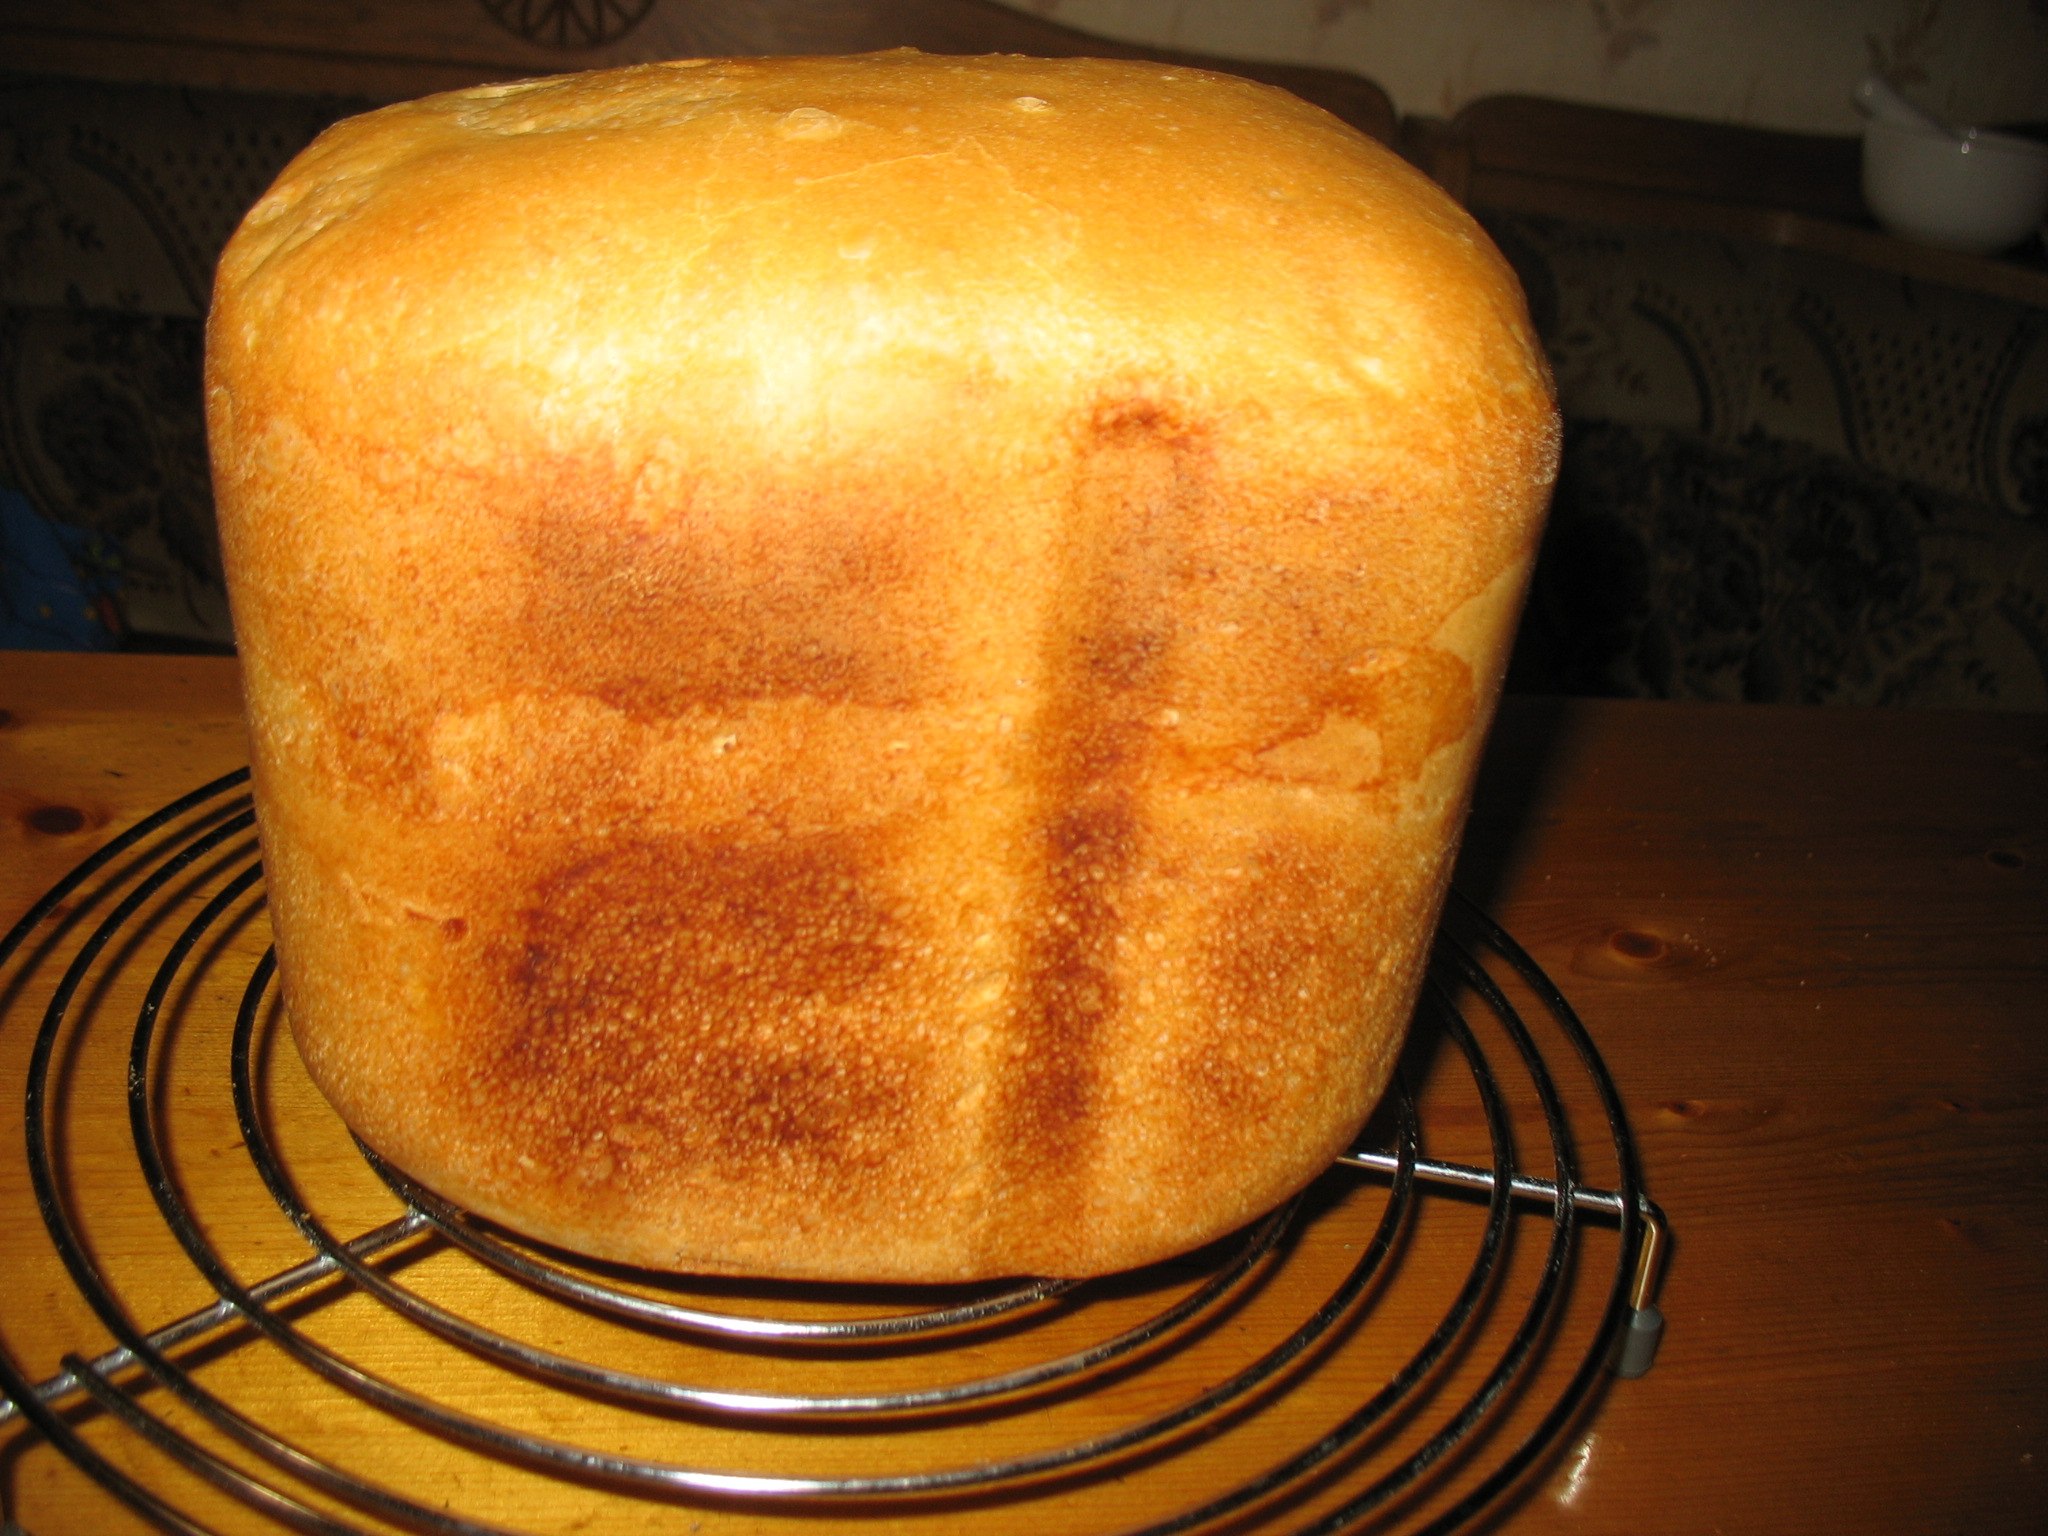 Приготовить в хлебопечке рецепты. Вкусный хлеб в хлебопечке. Французский хлеб в хлебопечке. Хлебопечь французский хлеб. Французская выпечка хлеба в хлебопечке.